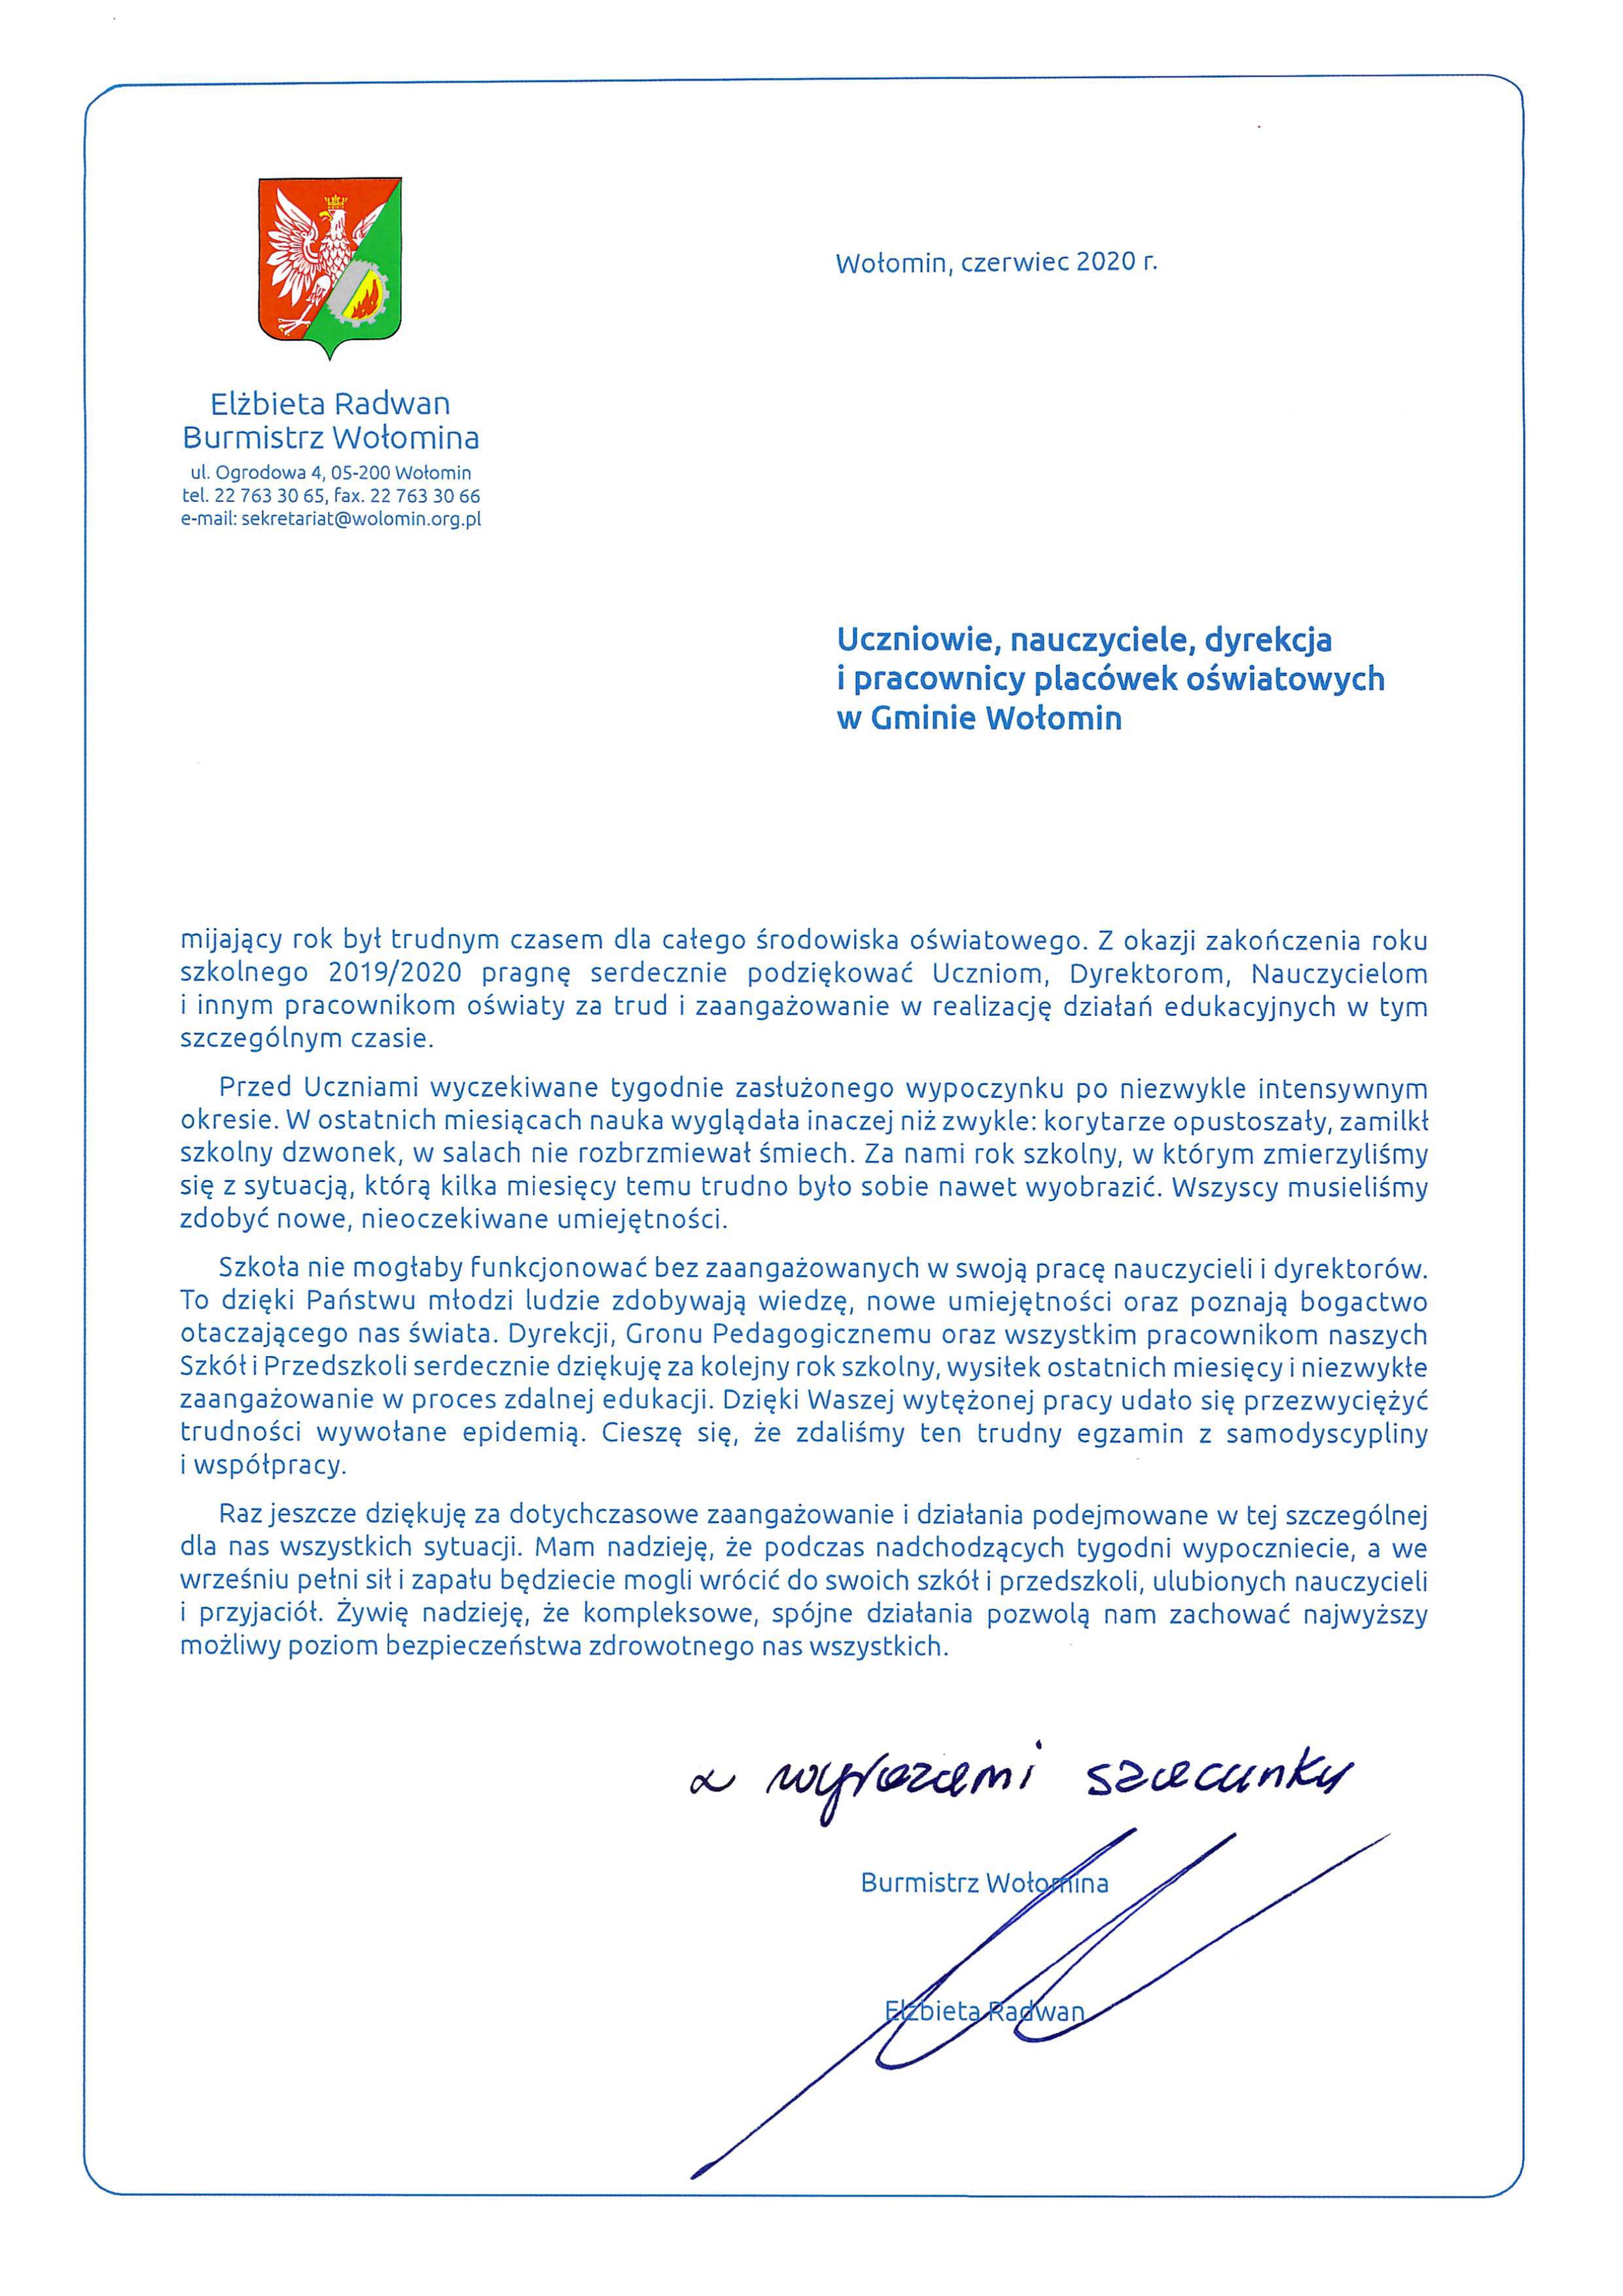 List Gratulacyjny Burmistrz Wolomina Oswiata